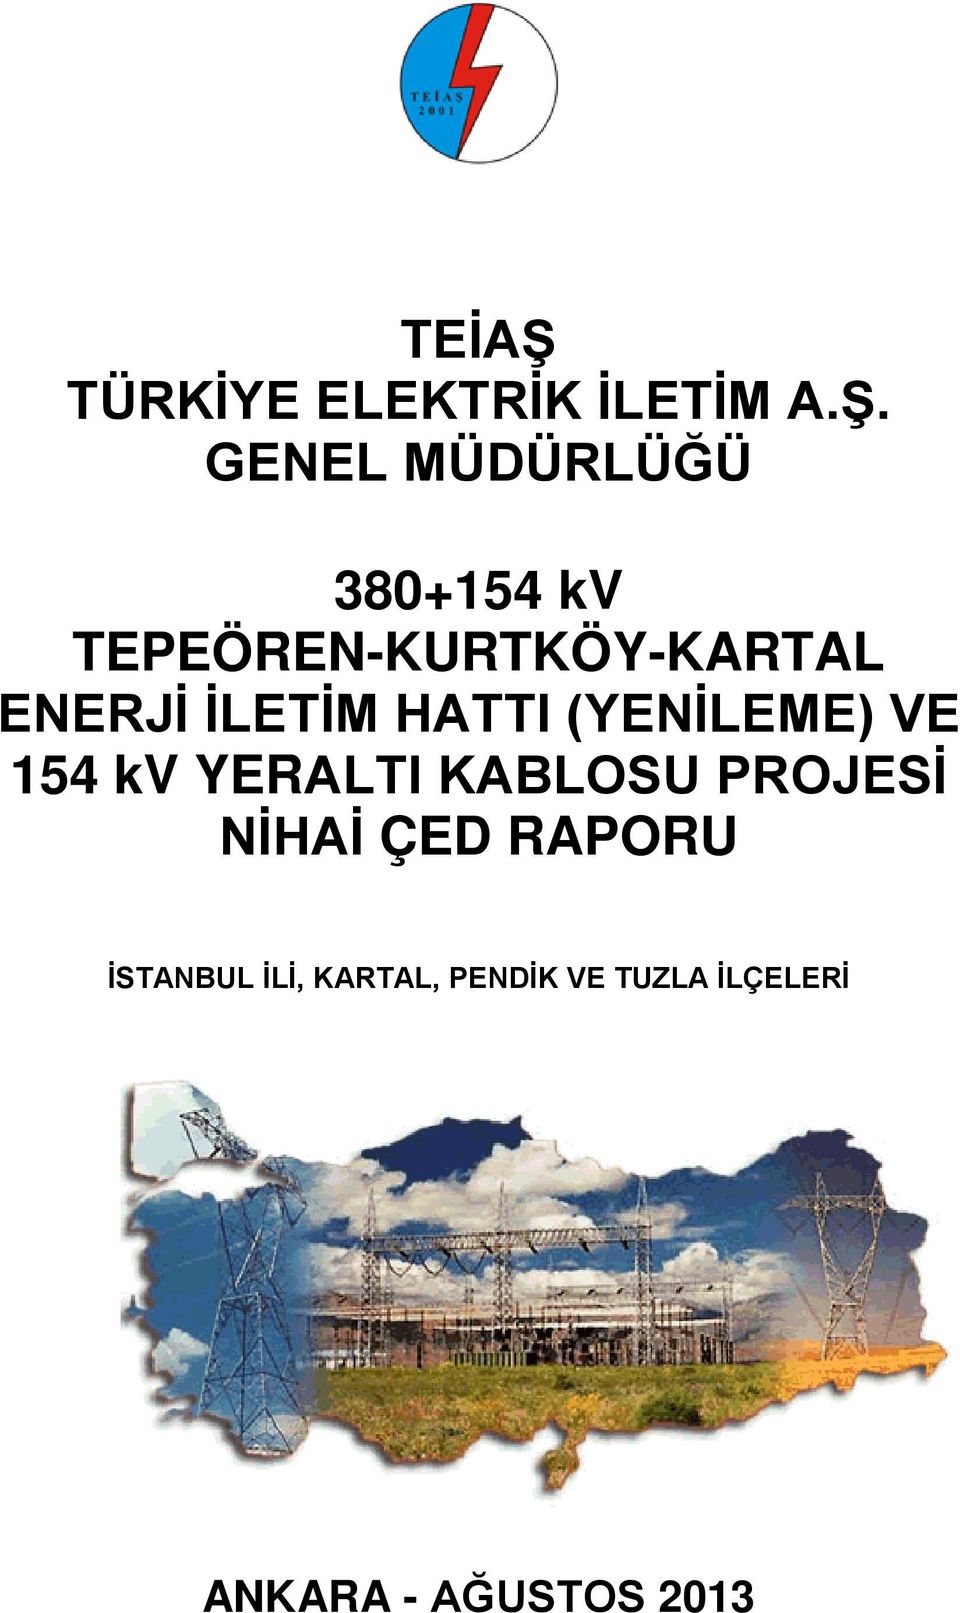 GENEL MÜDÜRLÜĞÜ 380+154 kv TEPEÖREN-KURTKÖY-KARTAL ENERJİ